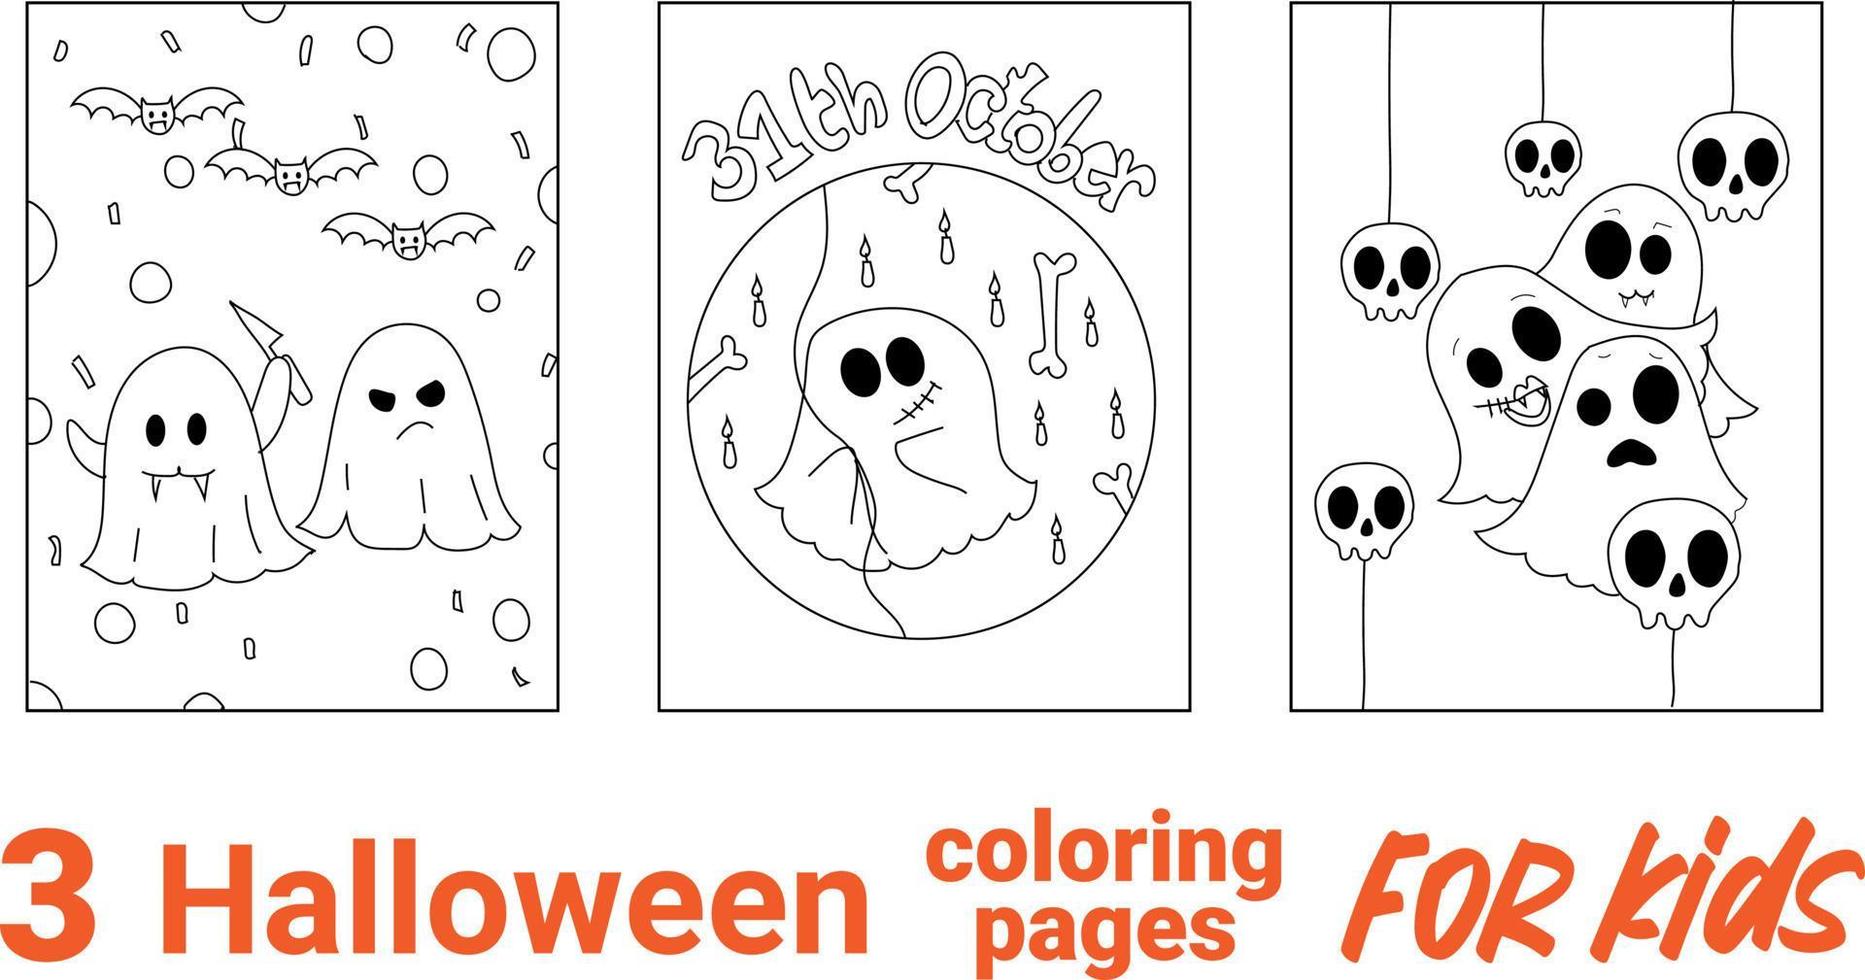 coloriage. illustration vectorielle noir et blanc avec citrouille heureuse en chapeau de sorcière. Coloriage Halloween Spooky Cottage pour les enfants. vecteur